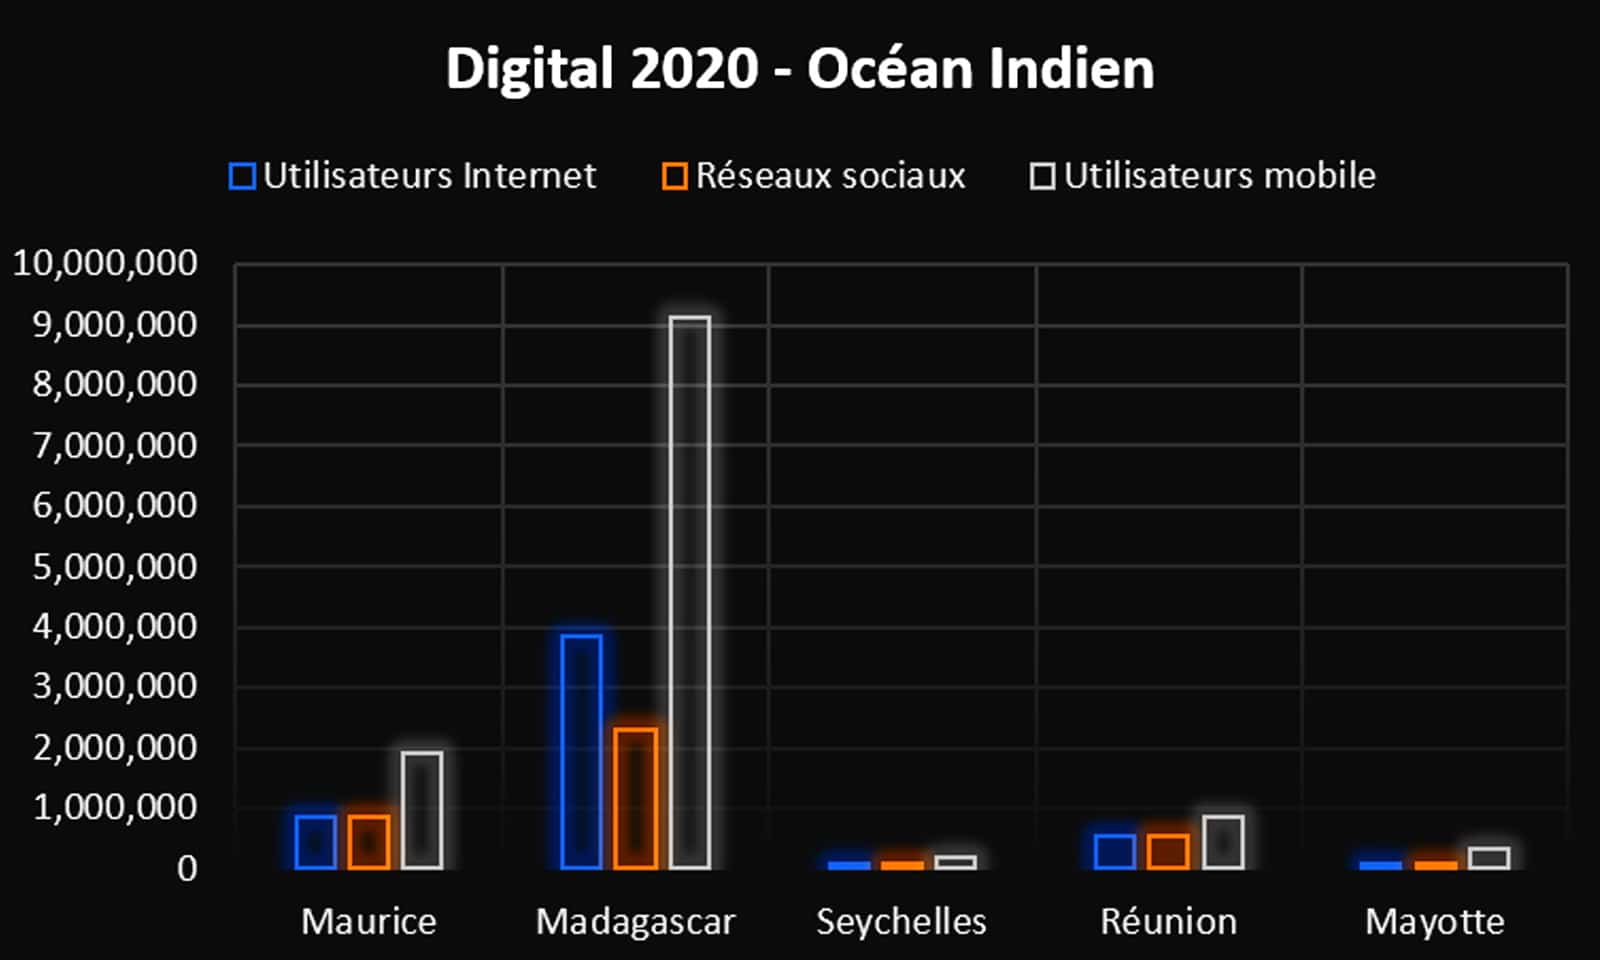 Digital 2020 – Utilisation d’internet dans les îles de l’océan Indien